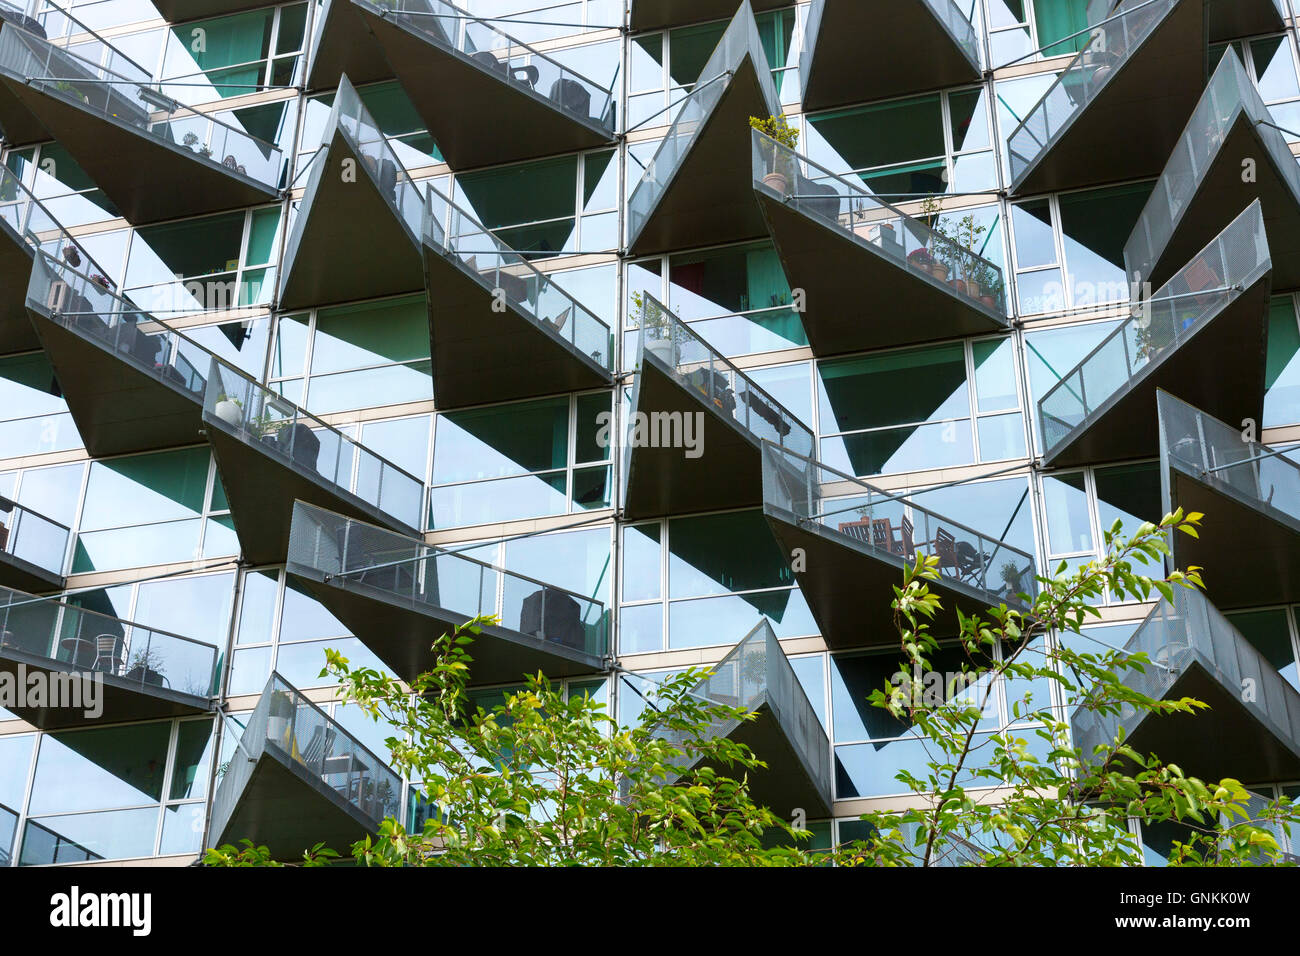 Glas Balkon moderne Architektur neue Hochhaus wohnungen Entwicklung orestads Boulevard in orestad City Bereich, Kopenhagen, Dänemark Stockfoto